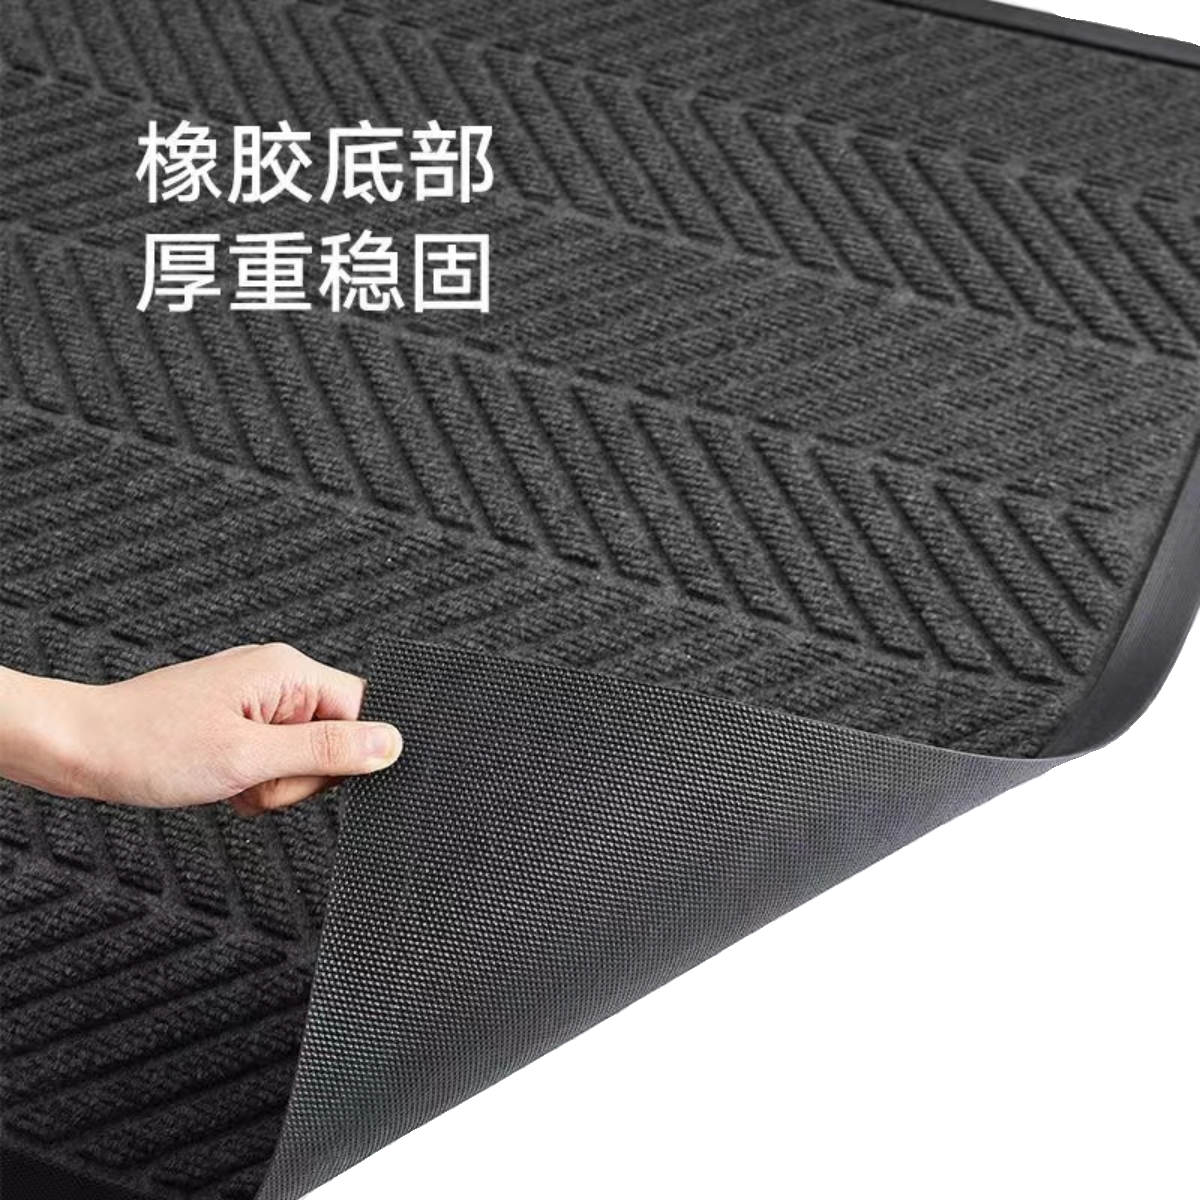 商用大门口地垫防滑耐磨地毯轮胎纹脚垫家用入户门垫可裁剪进门垫-图3